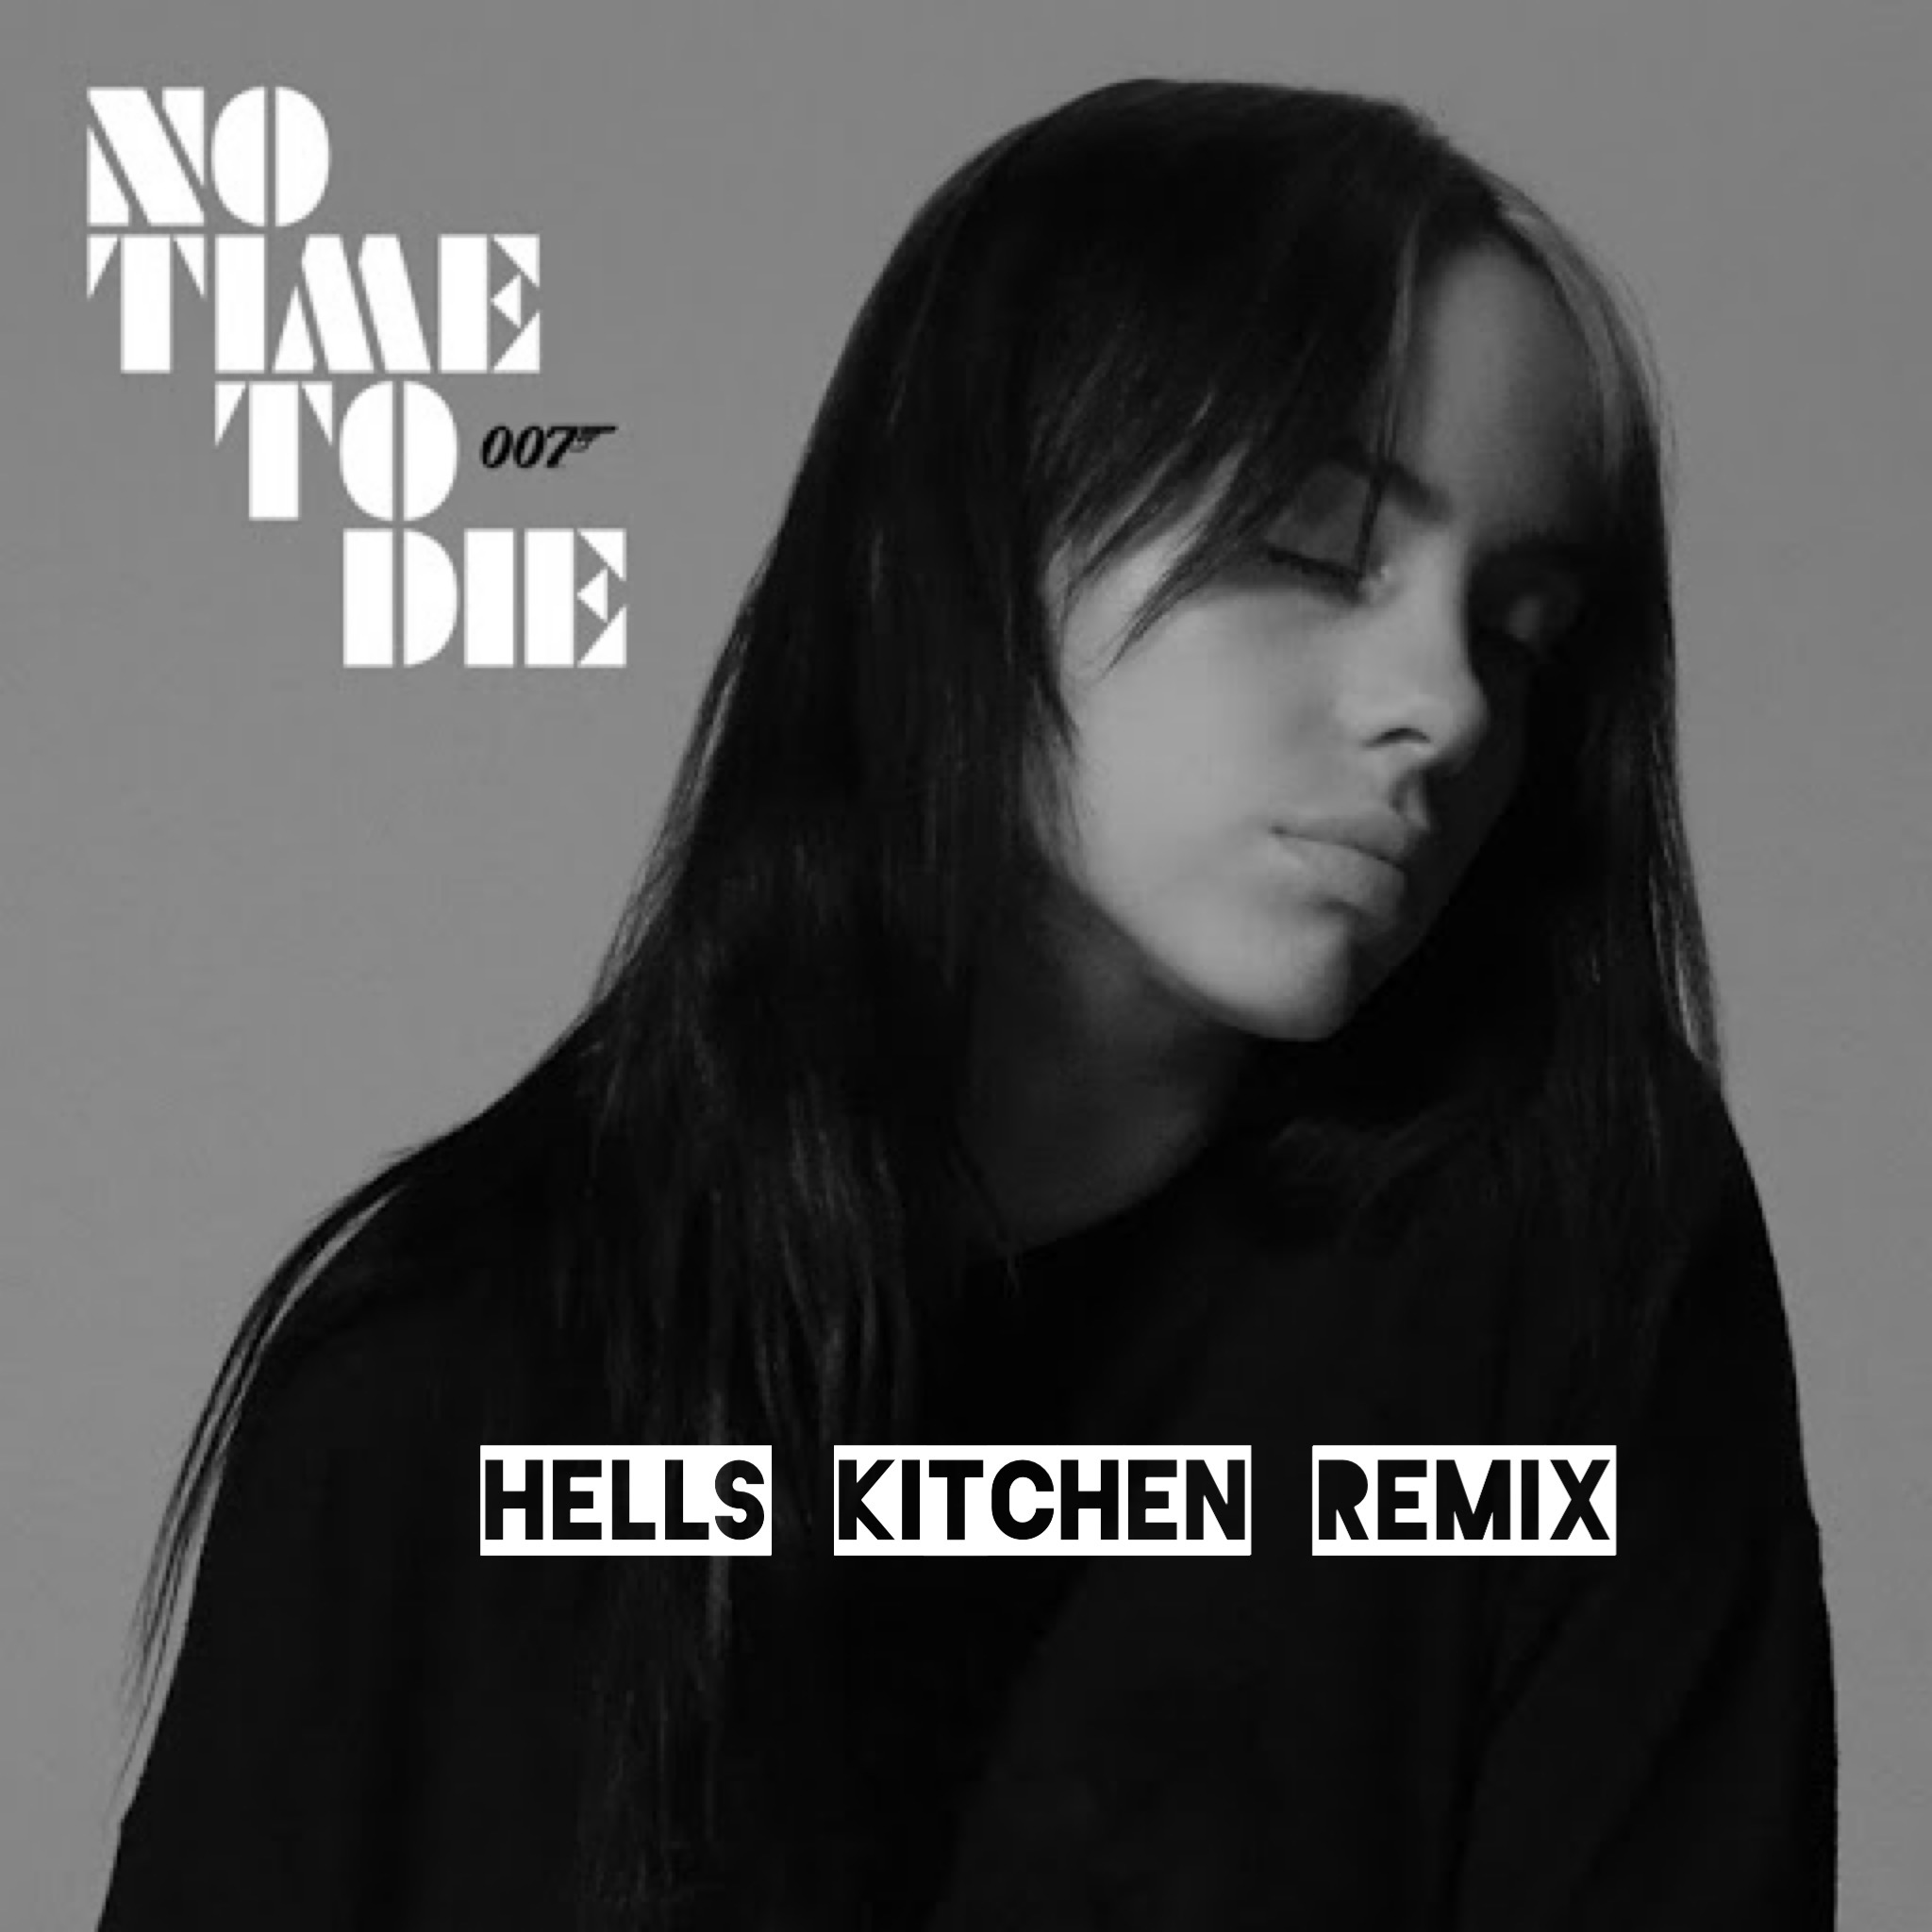 Billie Eilish - No Time To Die (Hells Kitchen Remix)